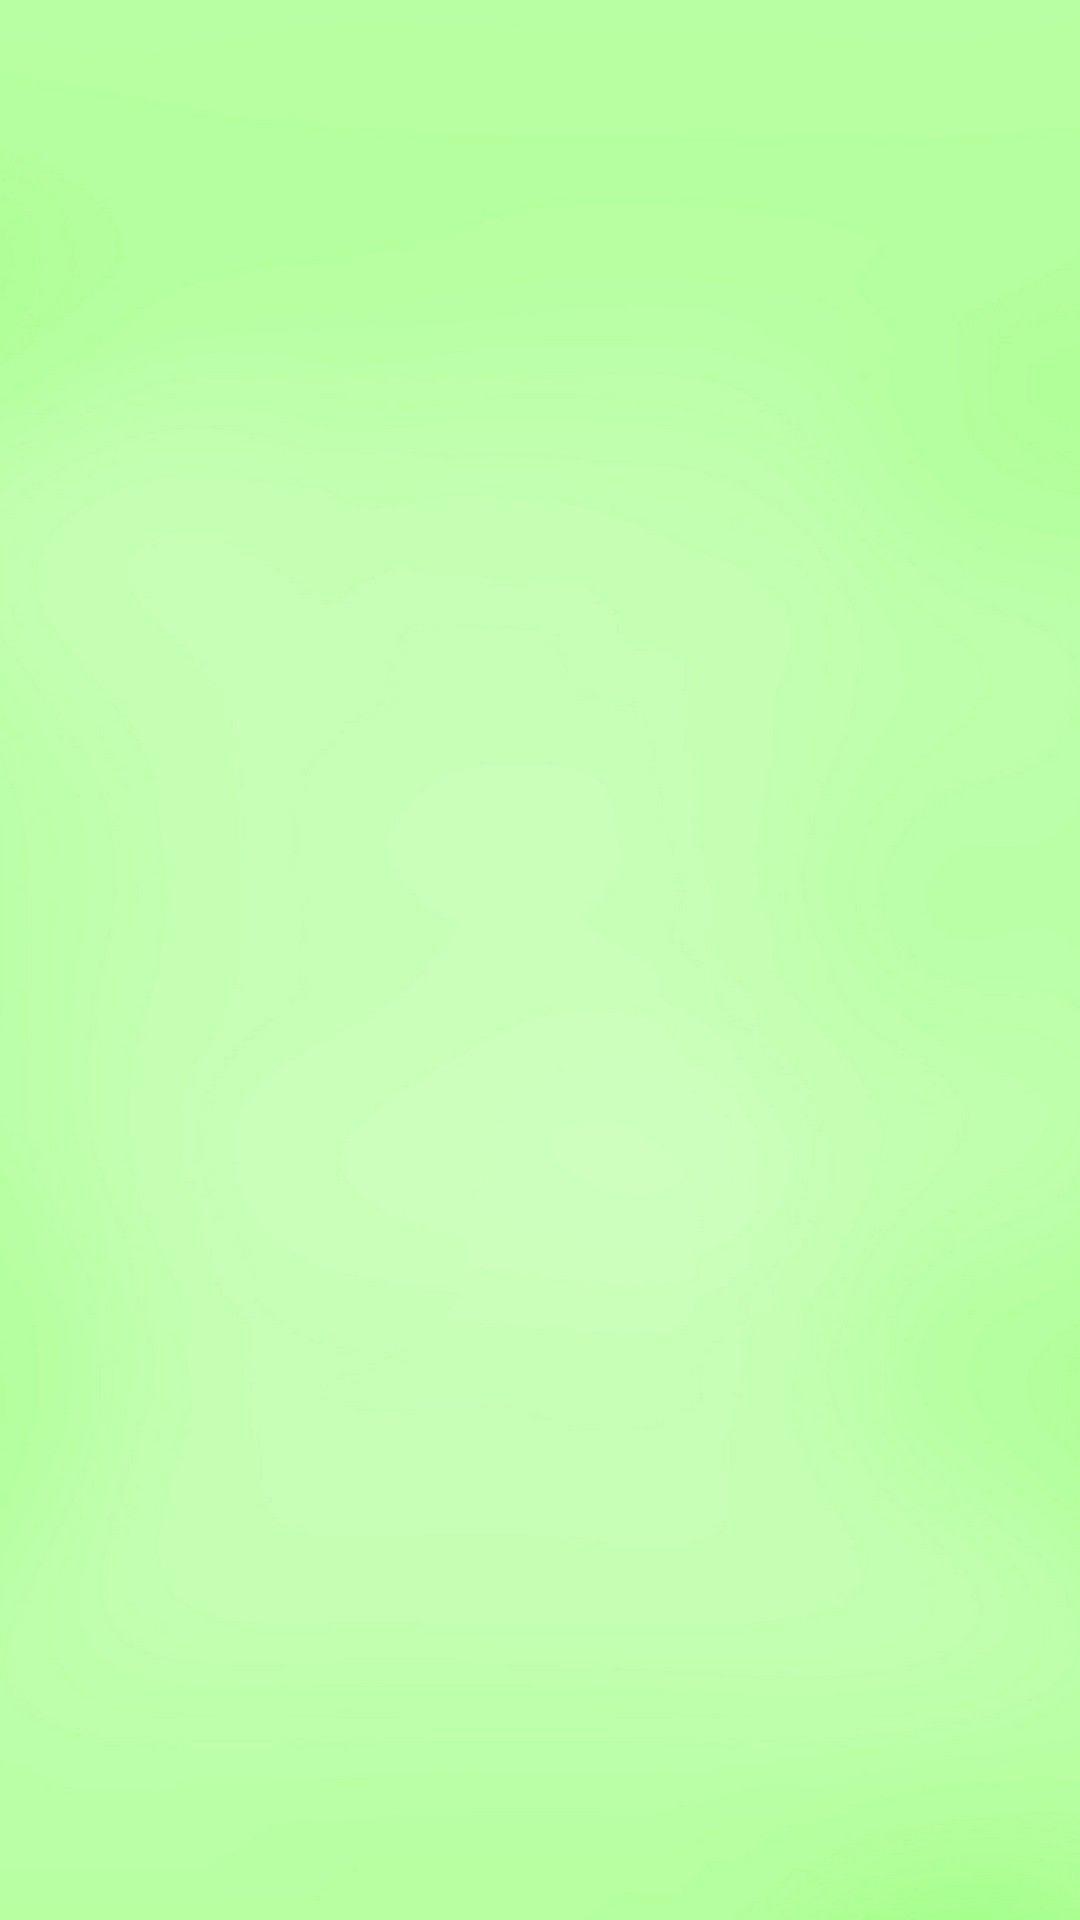 Hình nền 1080x1920 Màu xanh lá cây nhạt Android - Hình nền di động tốt nhất